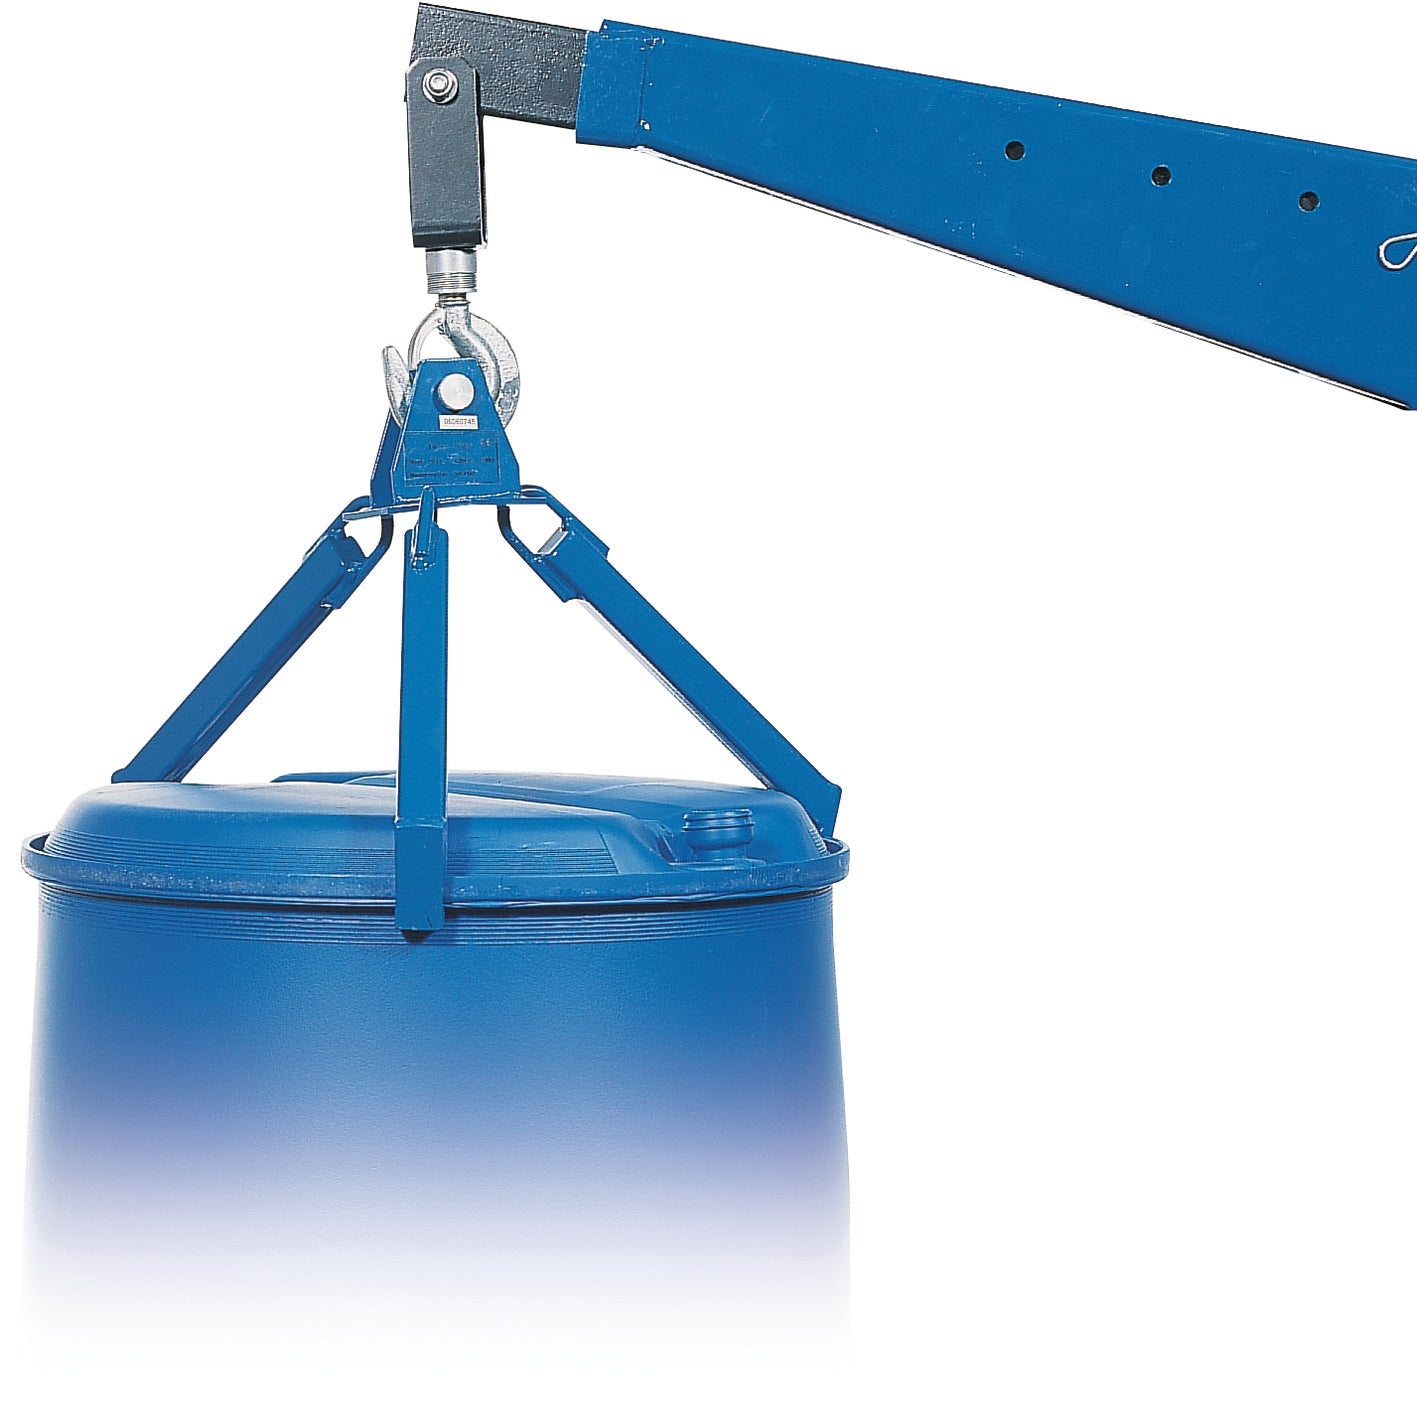 Drum lifting gear - vertical steel blue, steel painted